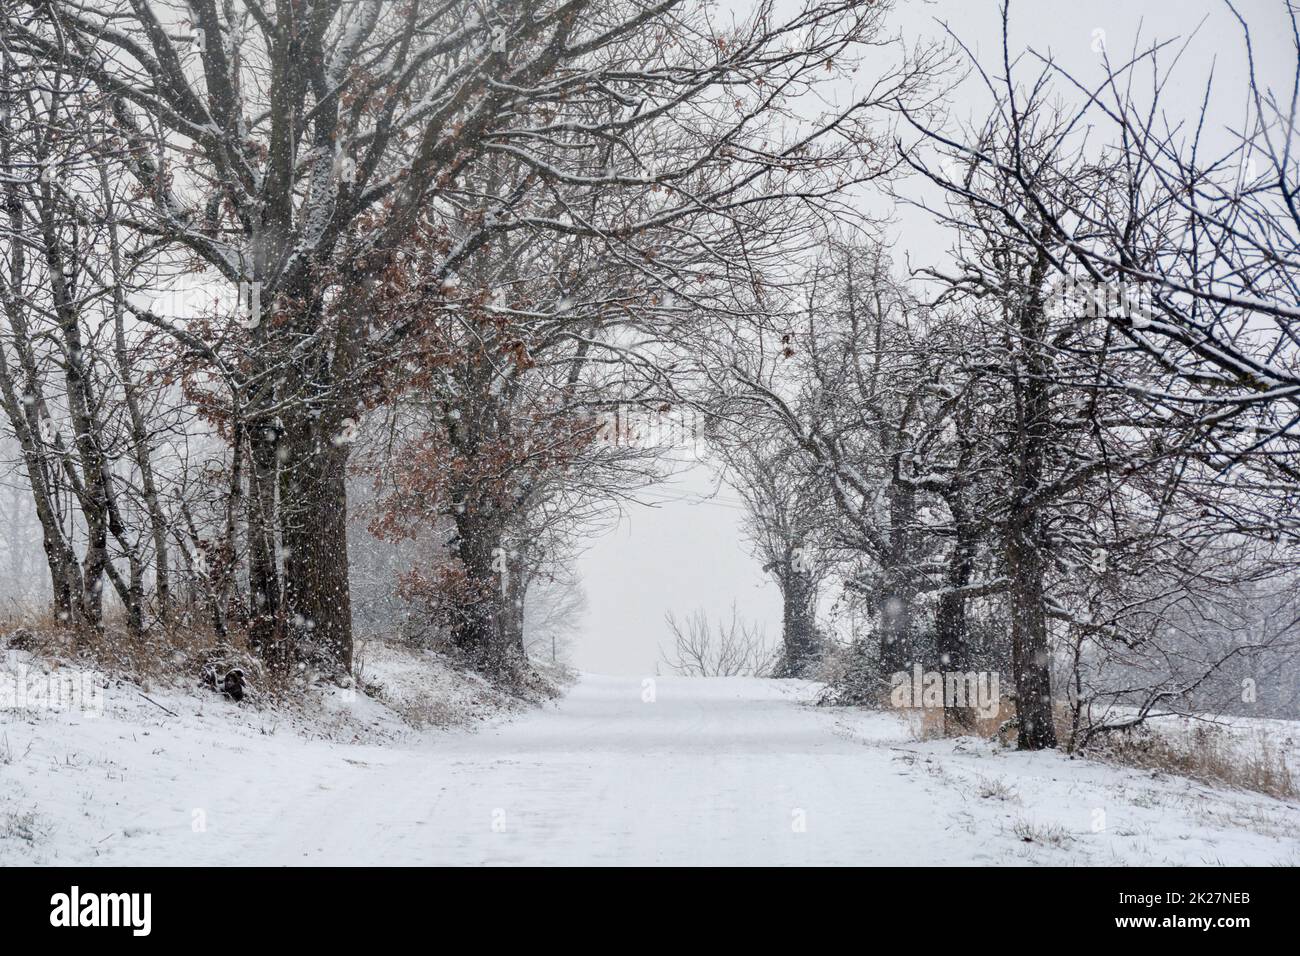 Invierno - un camino nevado a través de árboles con fuertes nevadas Foto de stock